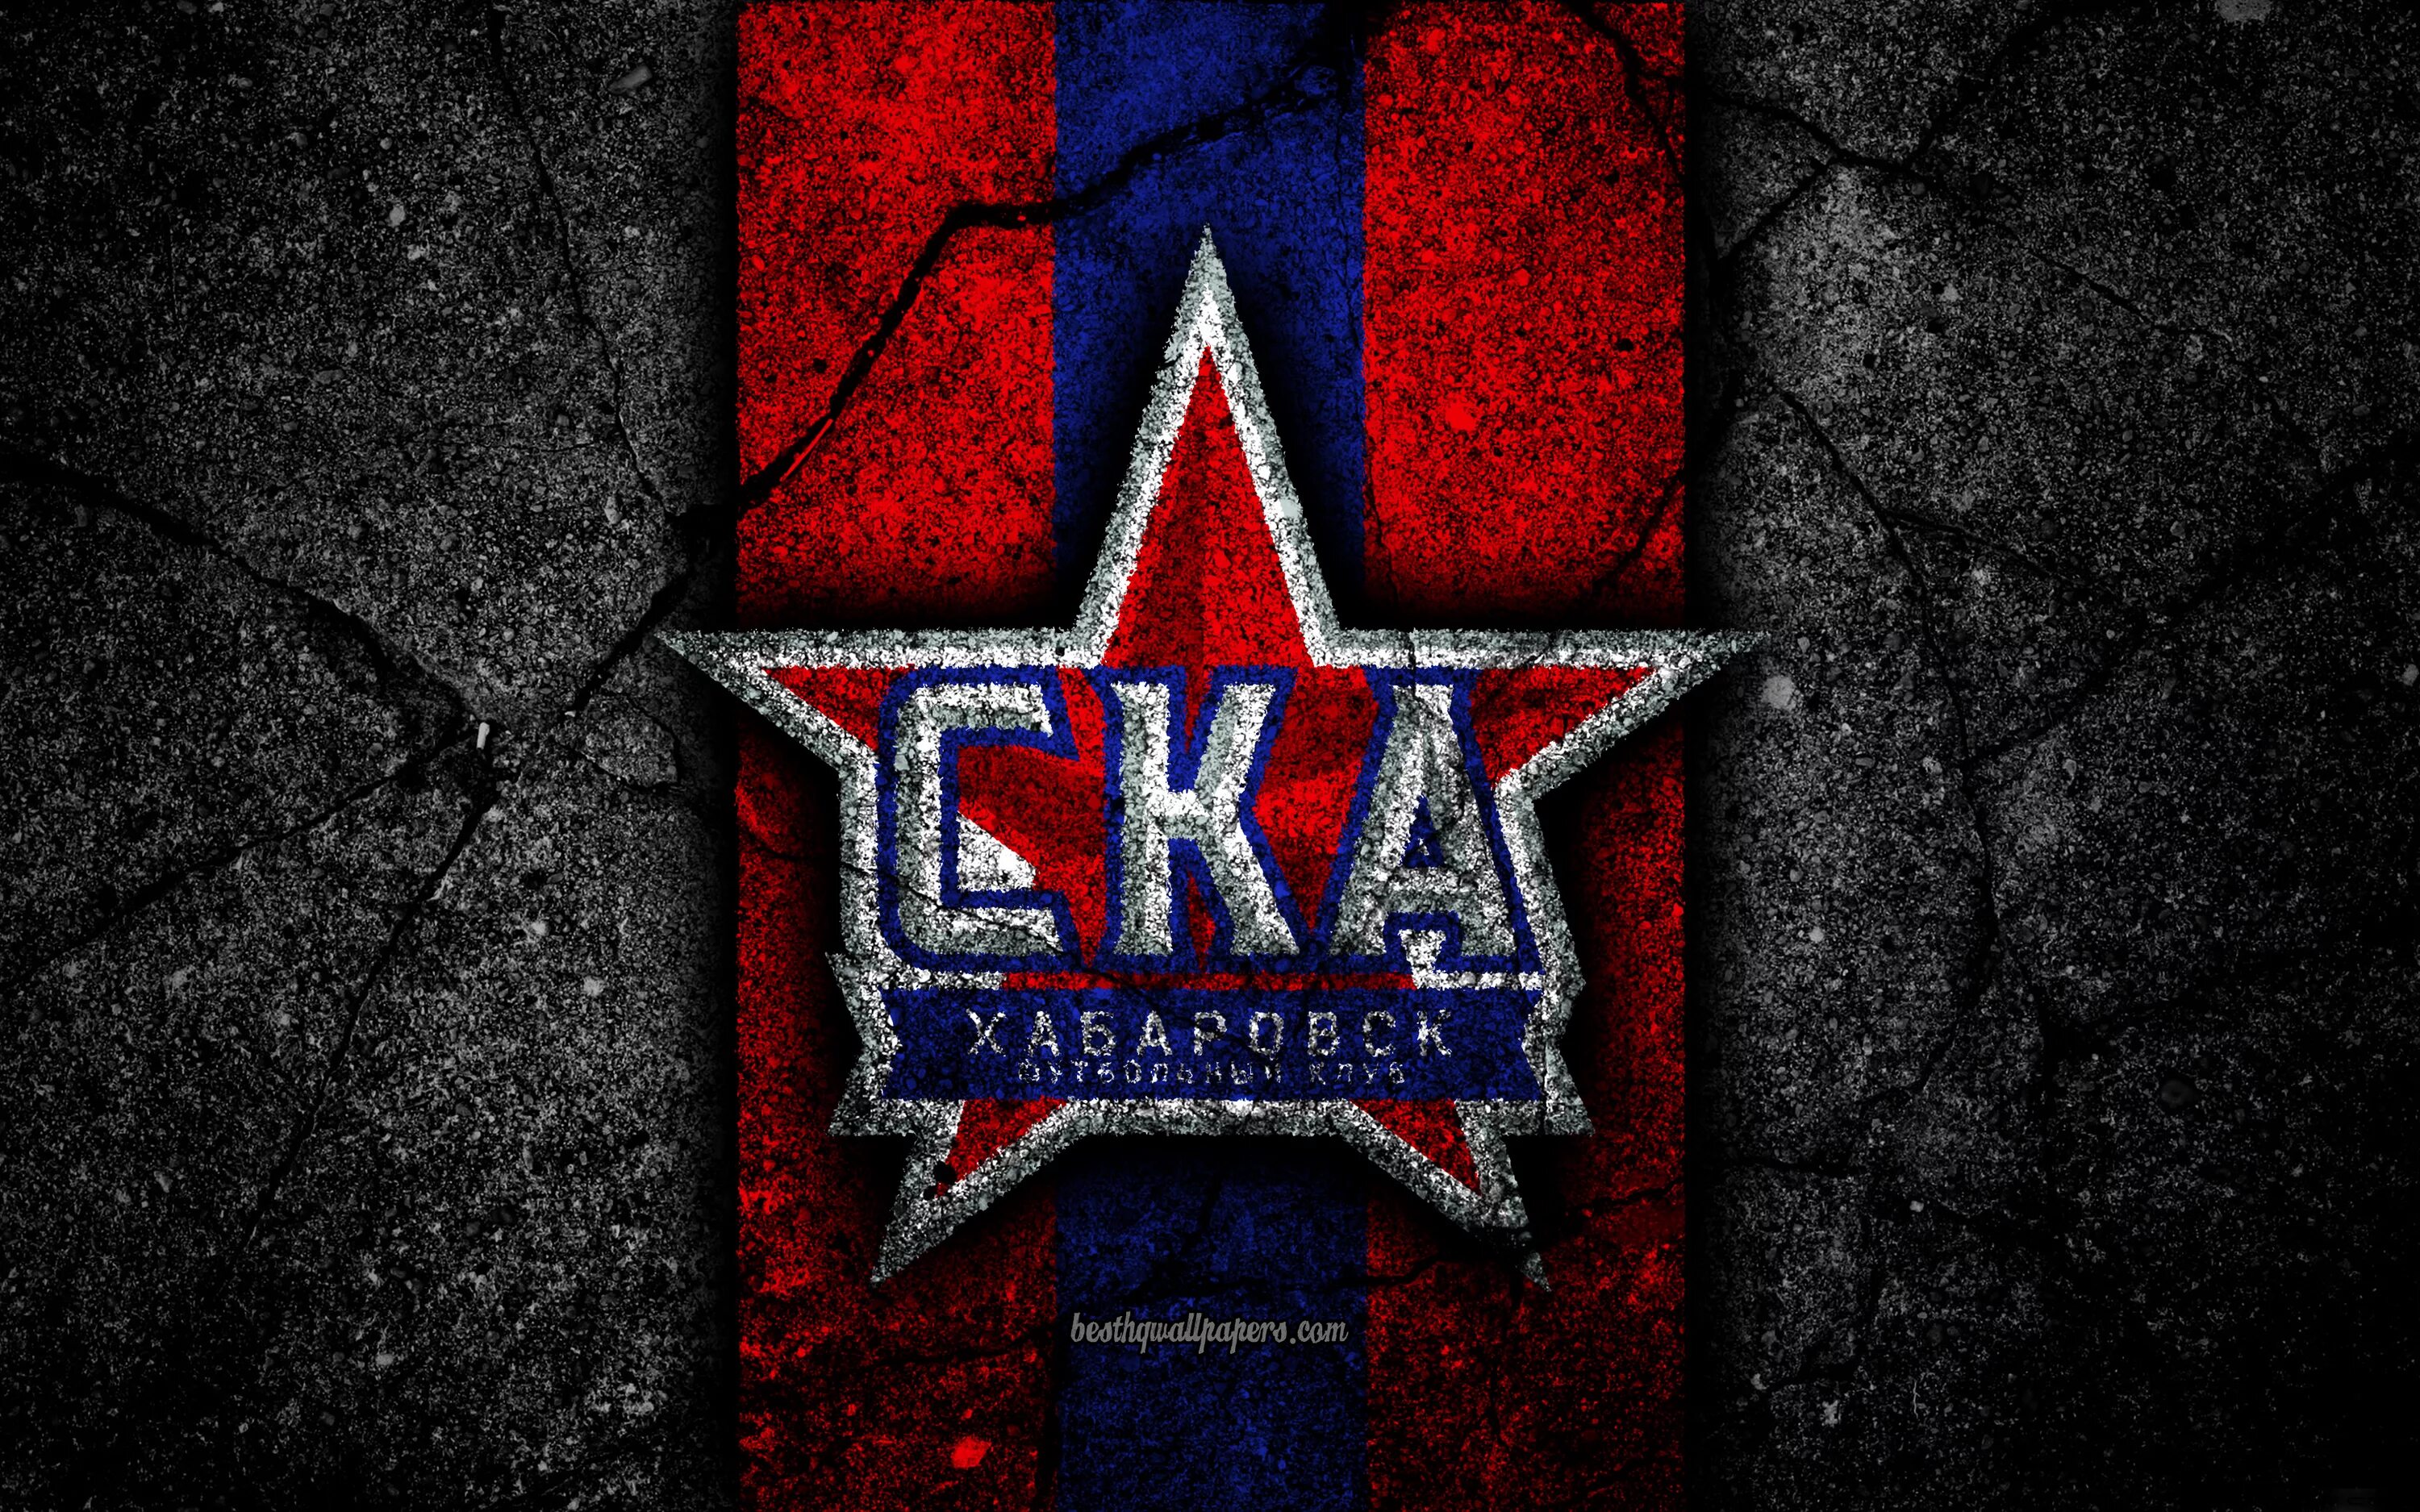 Хоккейный клуб СКА лого. Хоккейныйклюб СКА лого. Заставка хк СКА. СКА Хабаровск логотип. Ска обои